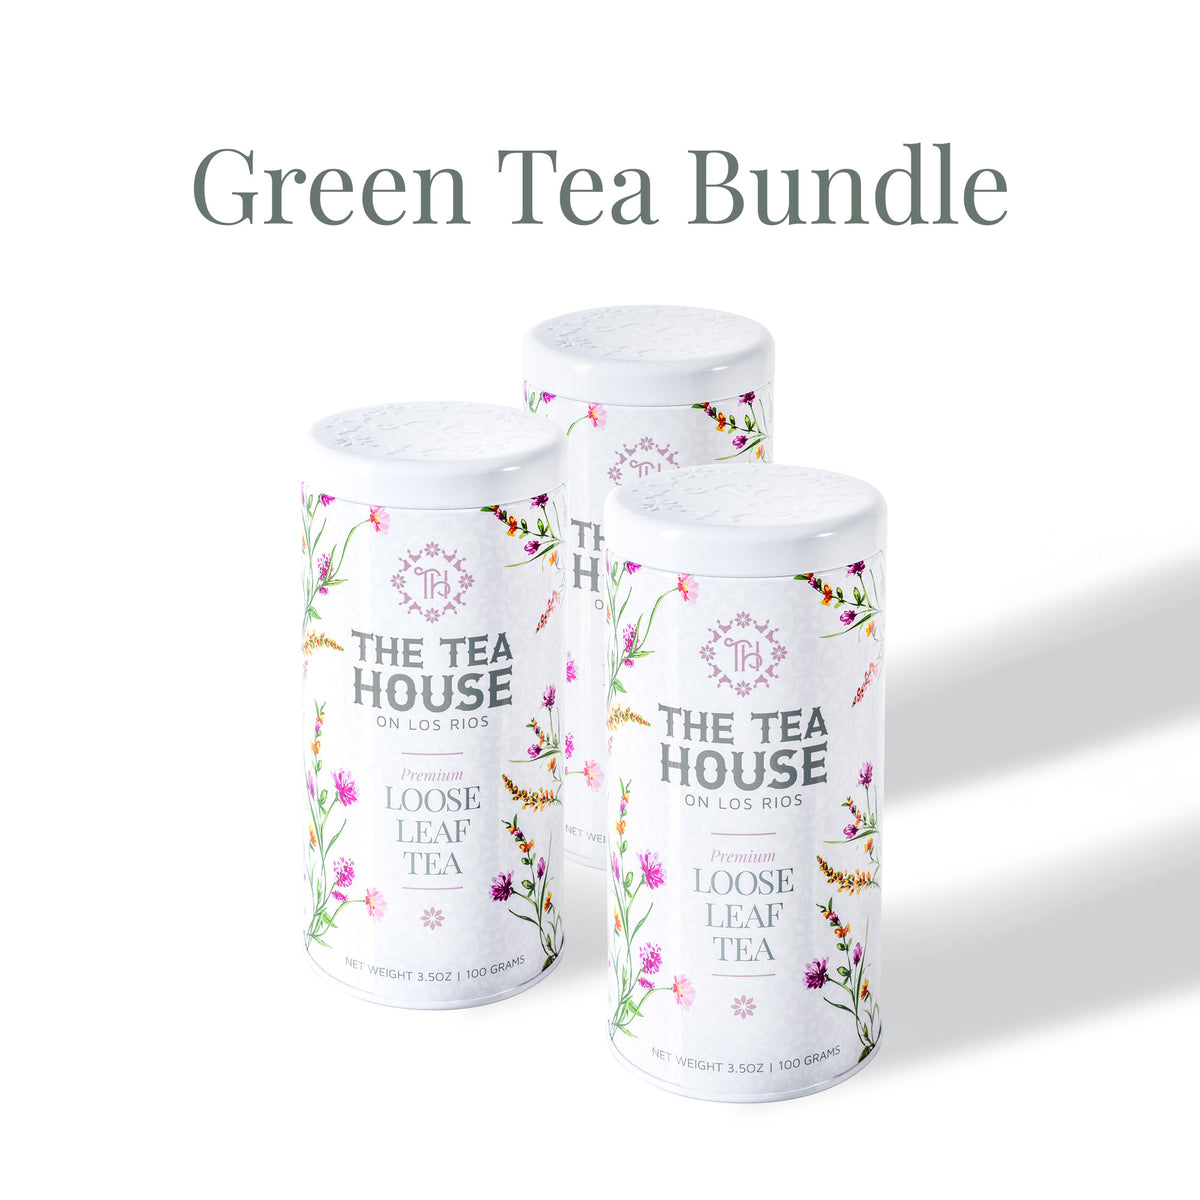 Green Tea 100g tin bundle of 3